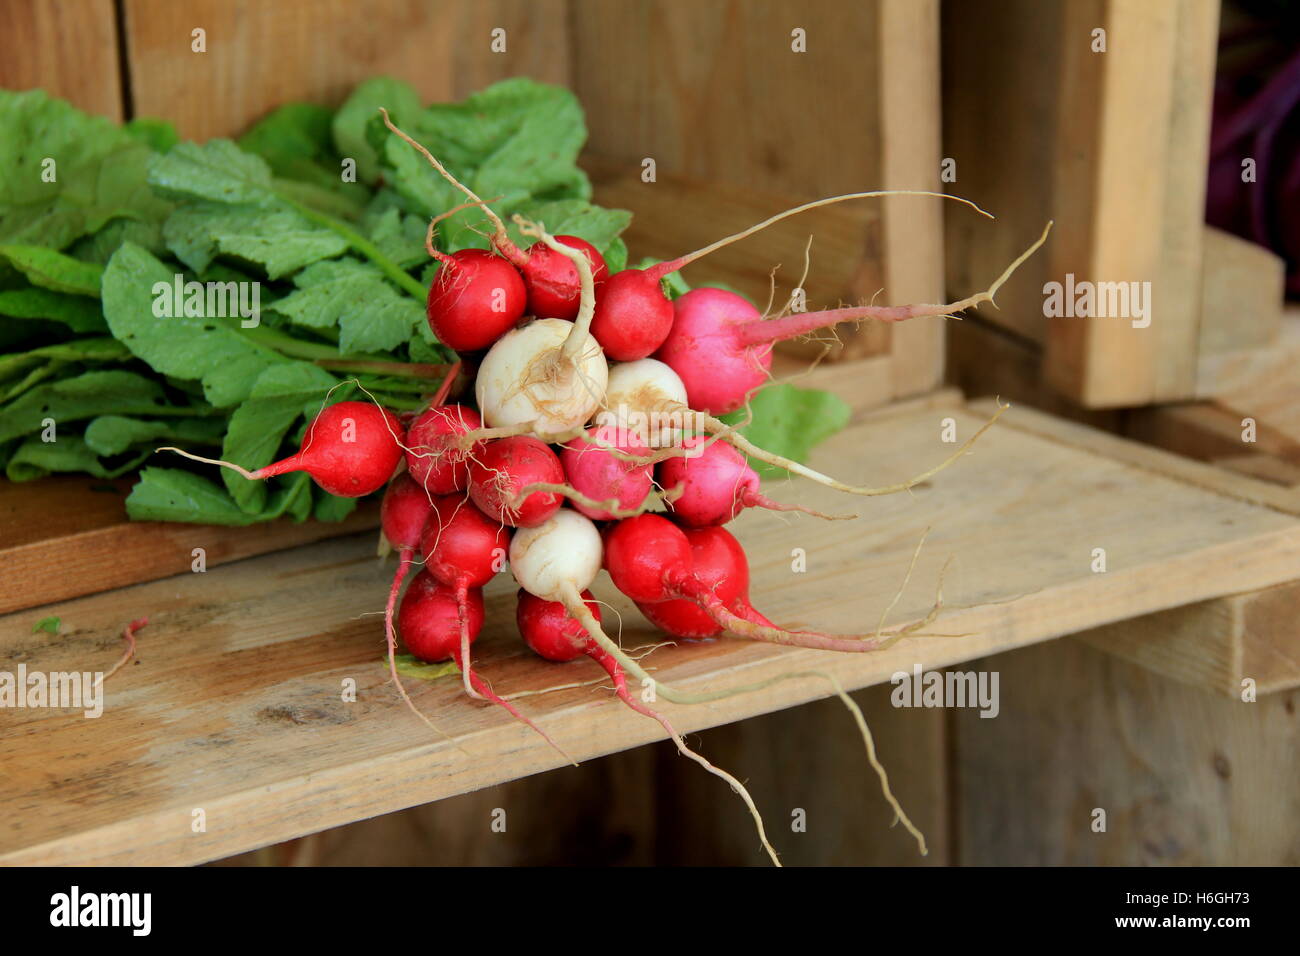 La cassa di legno che mostra due ultimi grappoli di ravanelli appena raccolti al mercato locale degli agricoltori, deve significare che il giorno delle vendite era buono. Foto Stock